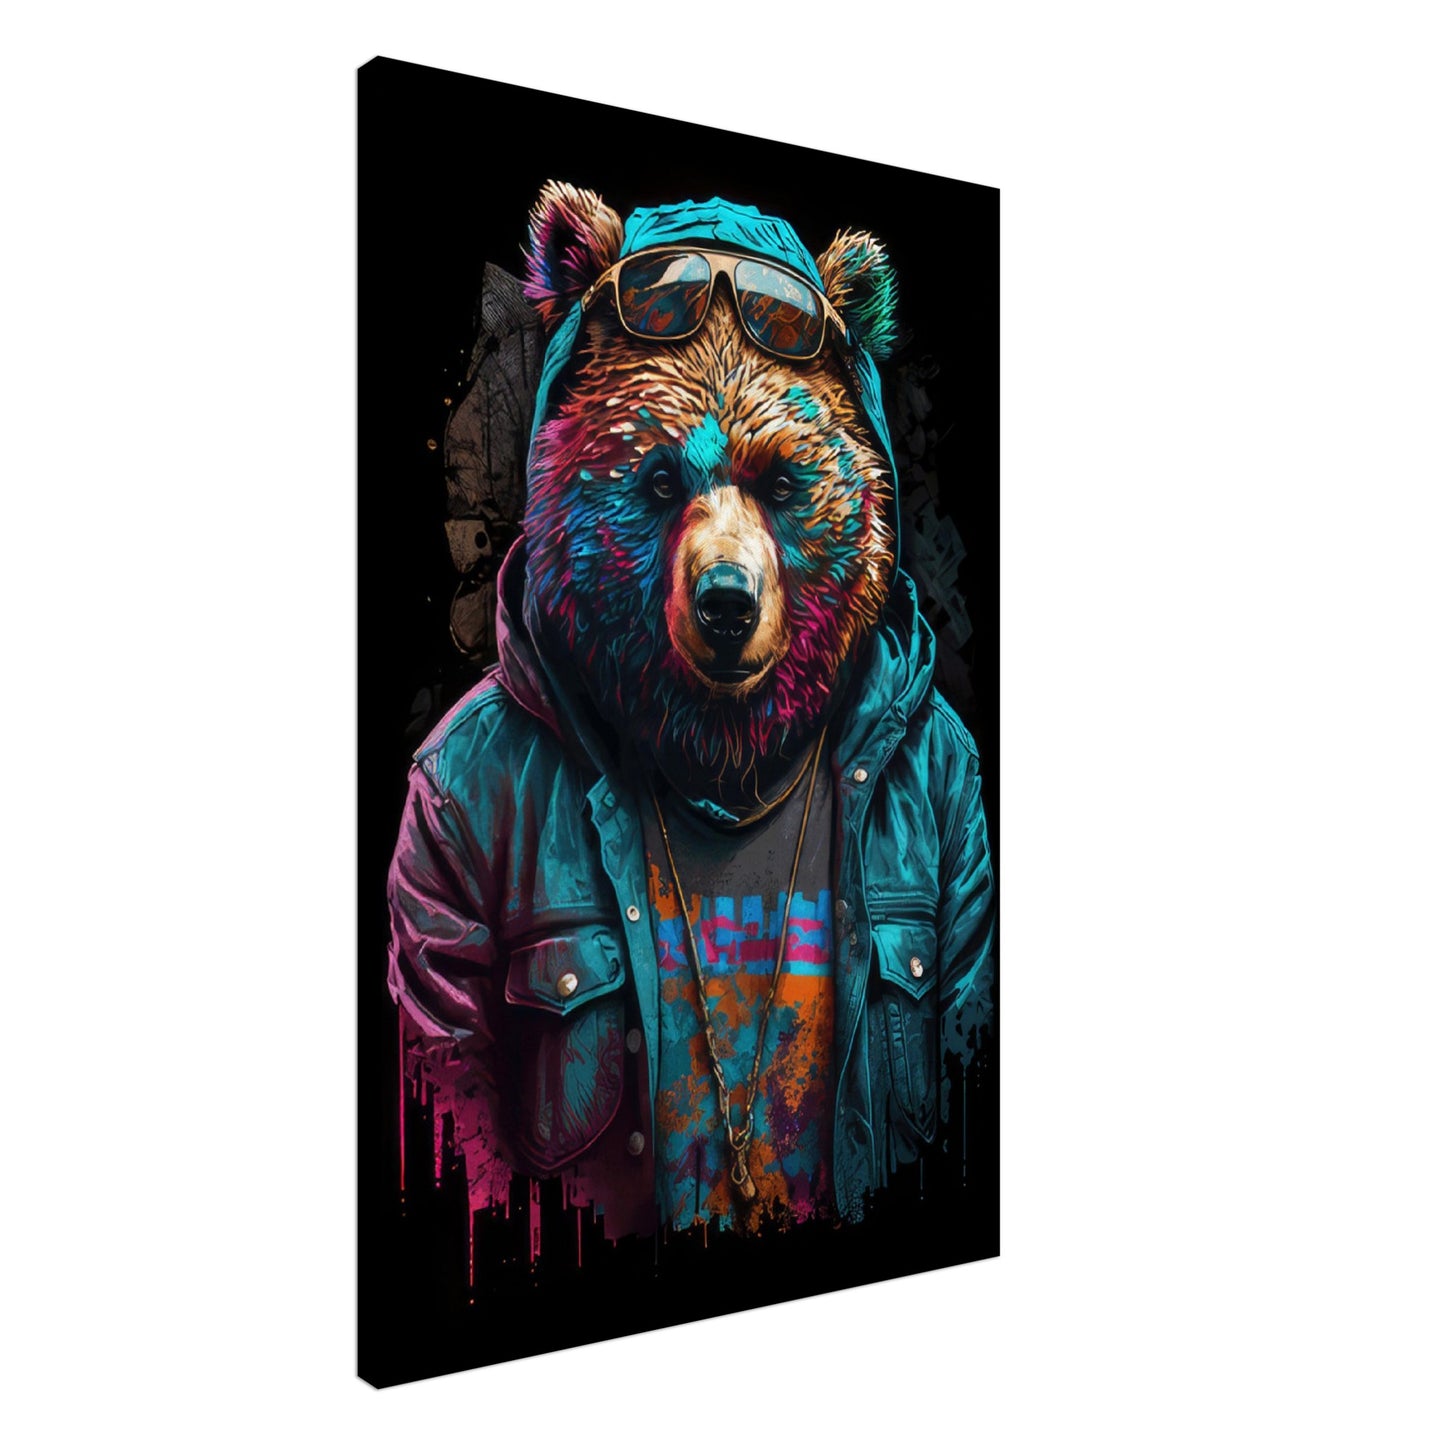 Bearly Believable - Bären Wandbild - Crazy Wildlife Leinwand ColorWorld im Hochformat - Coole Tiere & Animals Kunstdruck